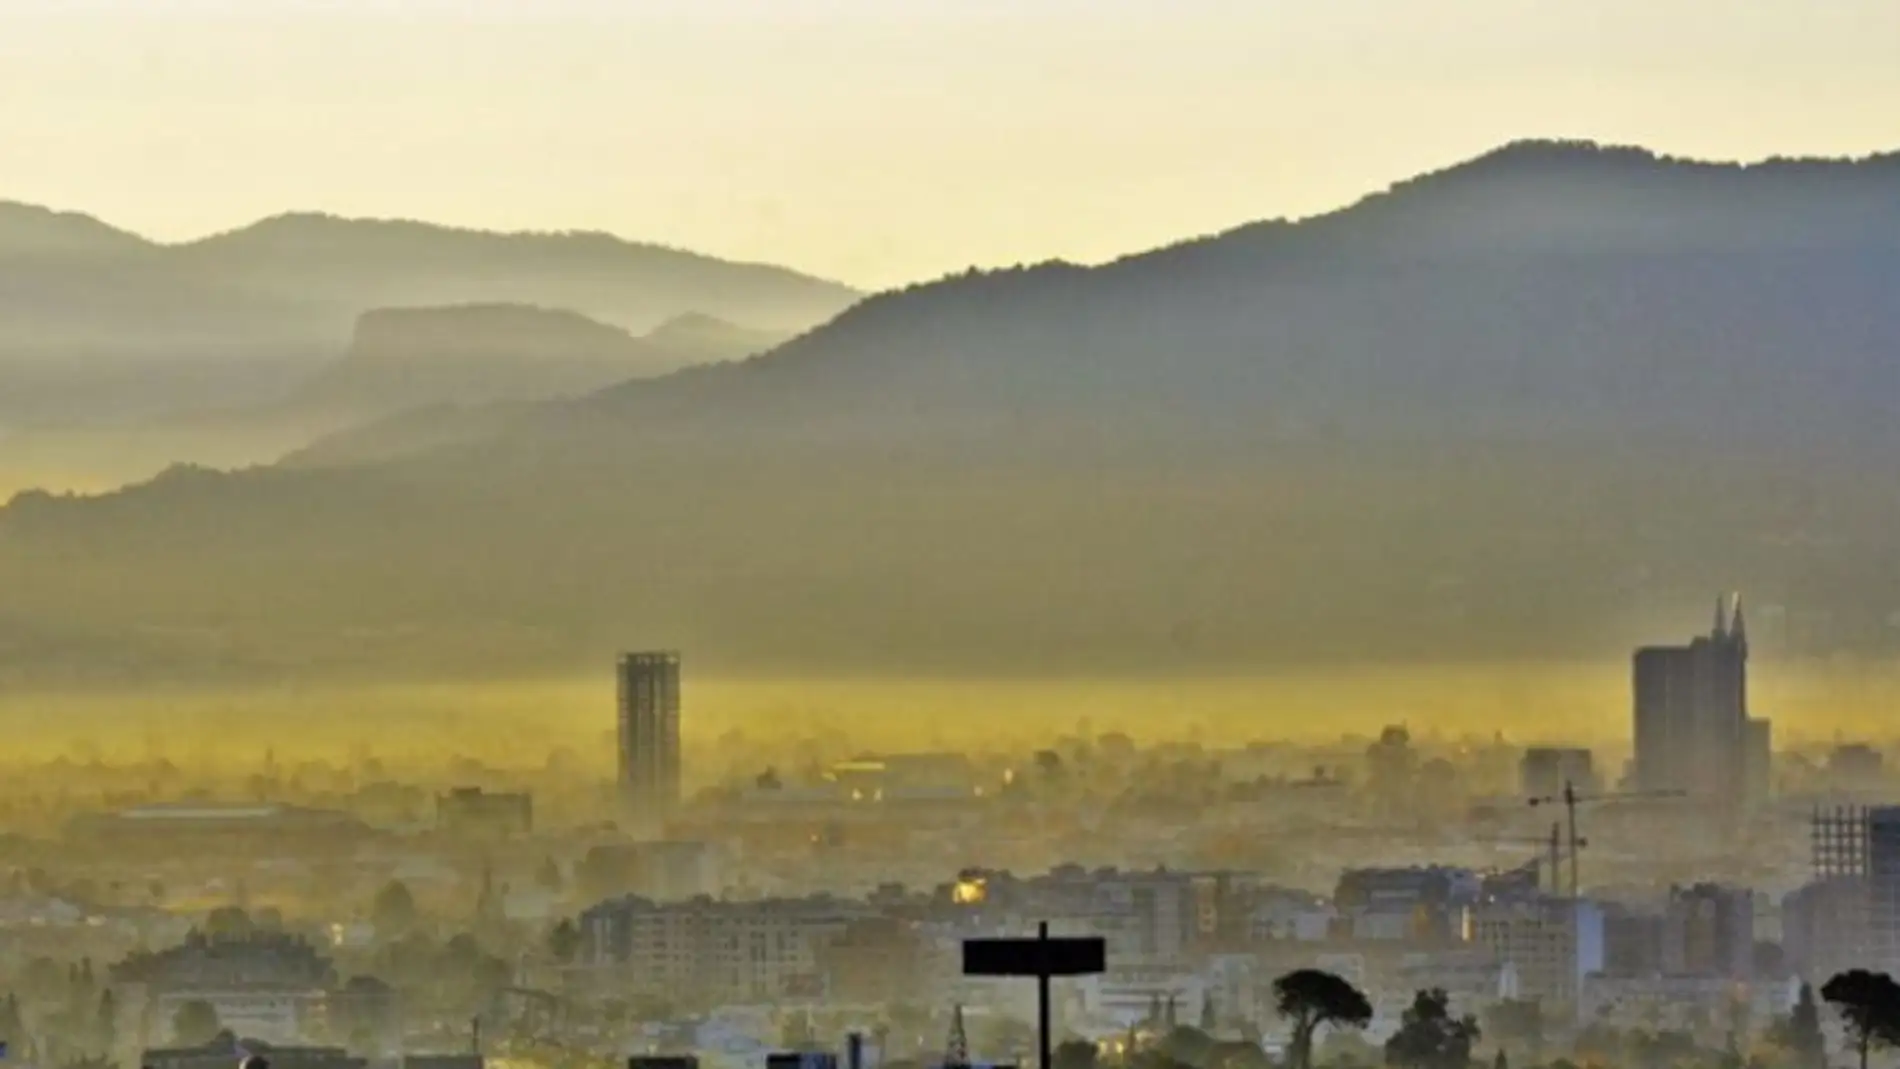 El Ayuntamiento Molina de Segura activa la alerta ante el elevado número de partículas PM10 registradas en la atmósfera debido a la entrada de una masa de aire de origen sahariano